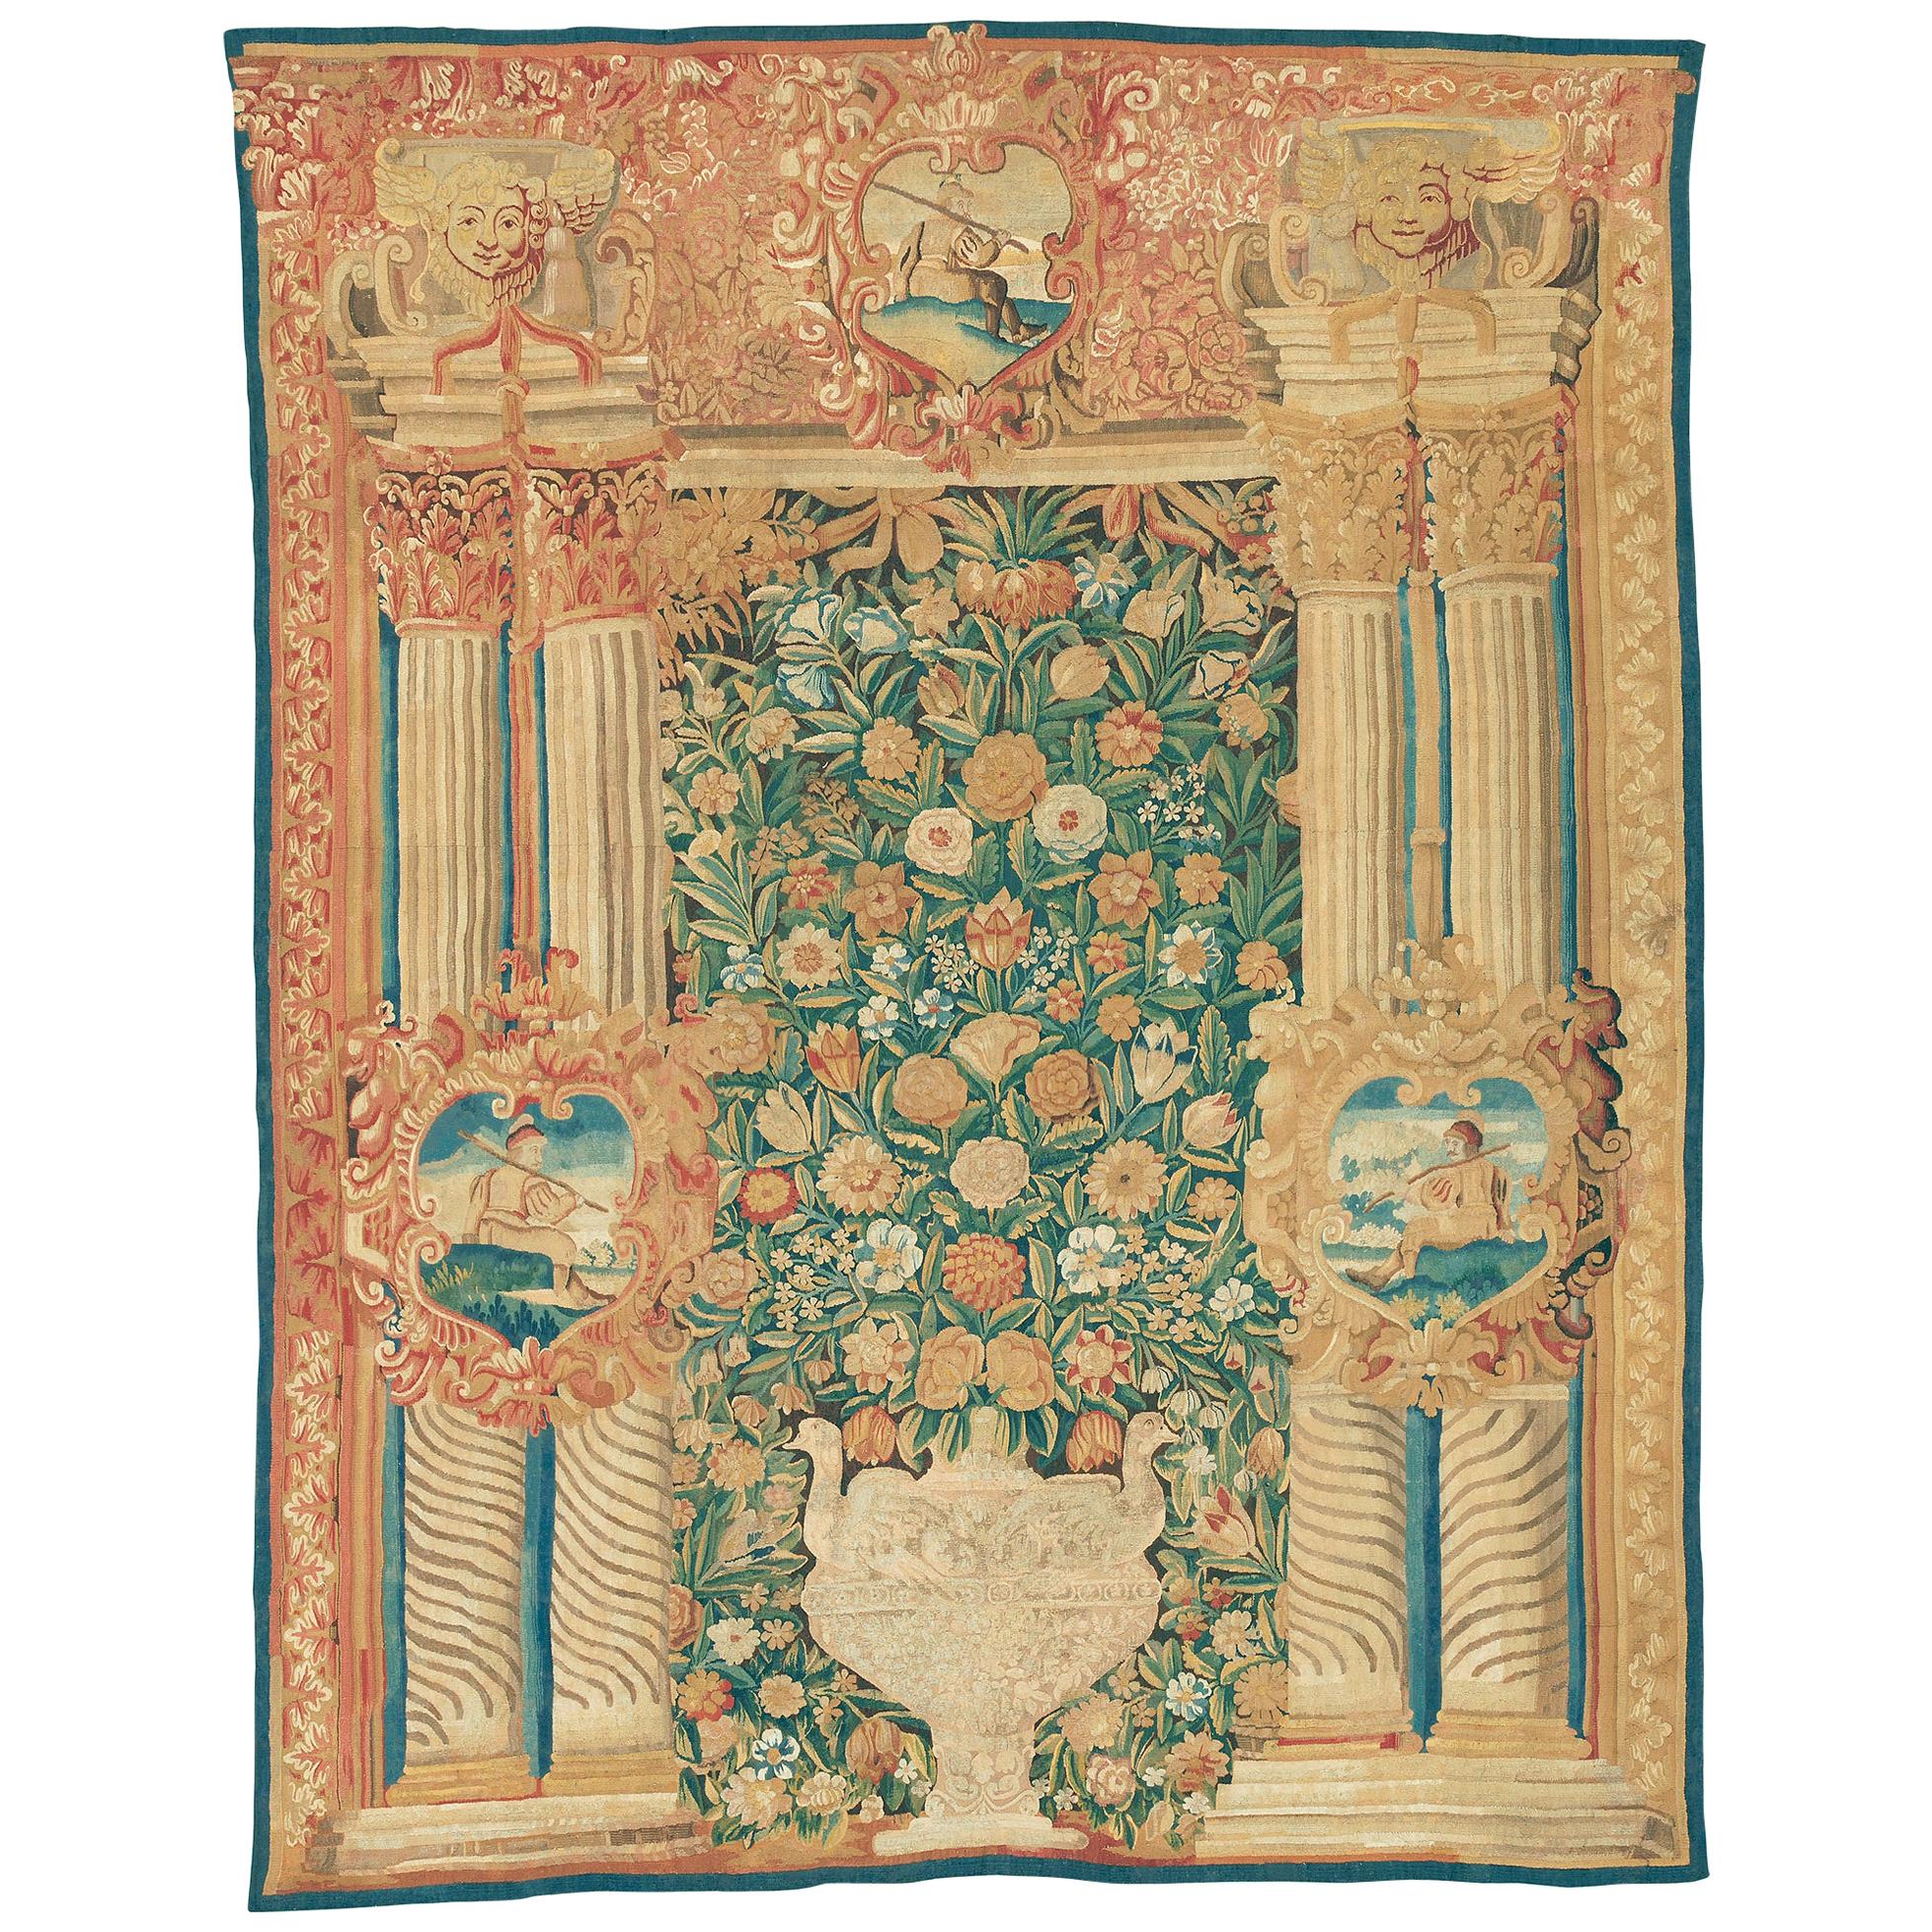 Flämischer Portico-Wandteppich aus dem frühen 17. Jahrhundert